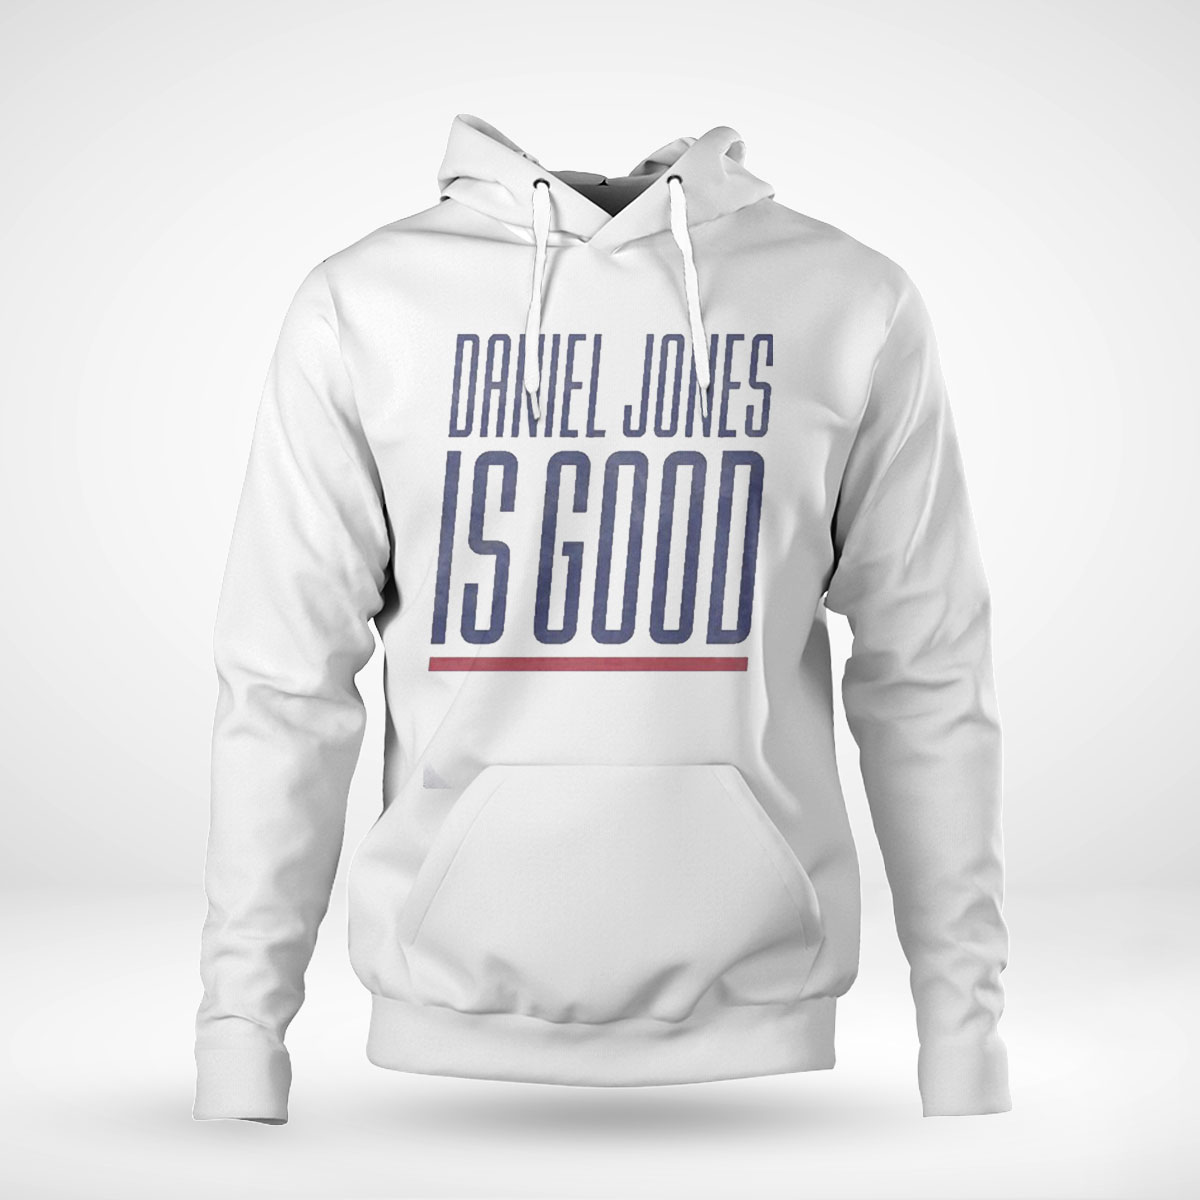 Daniel Jones Is Good Shirt New York Giants